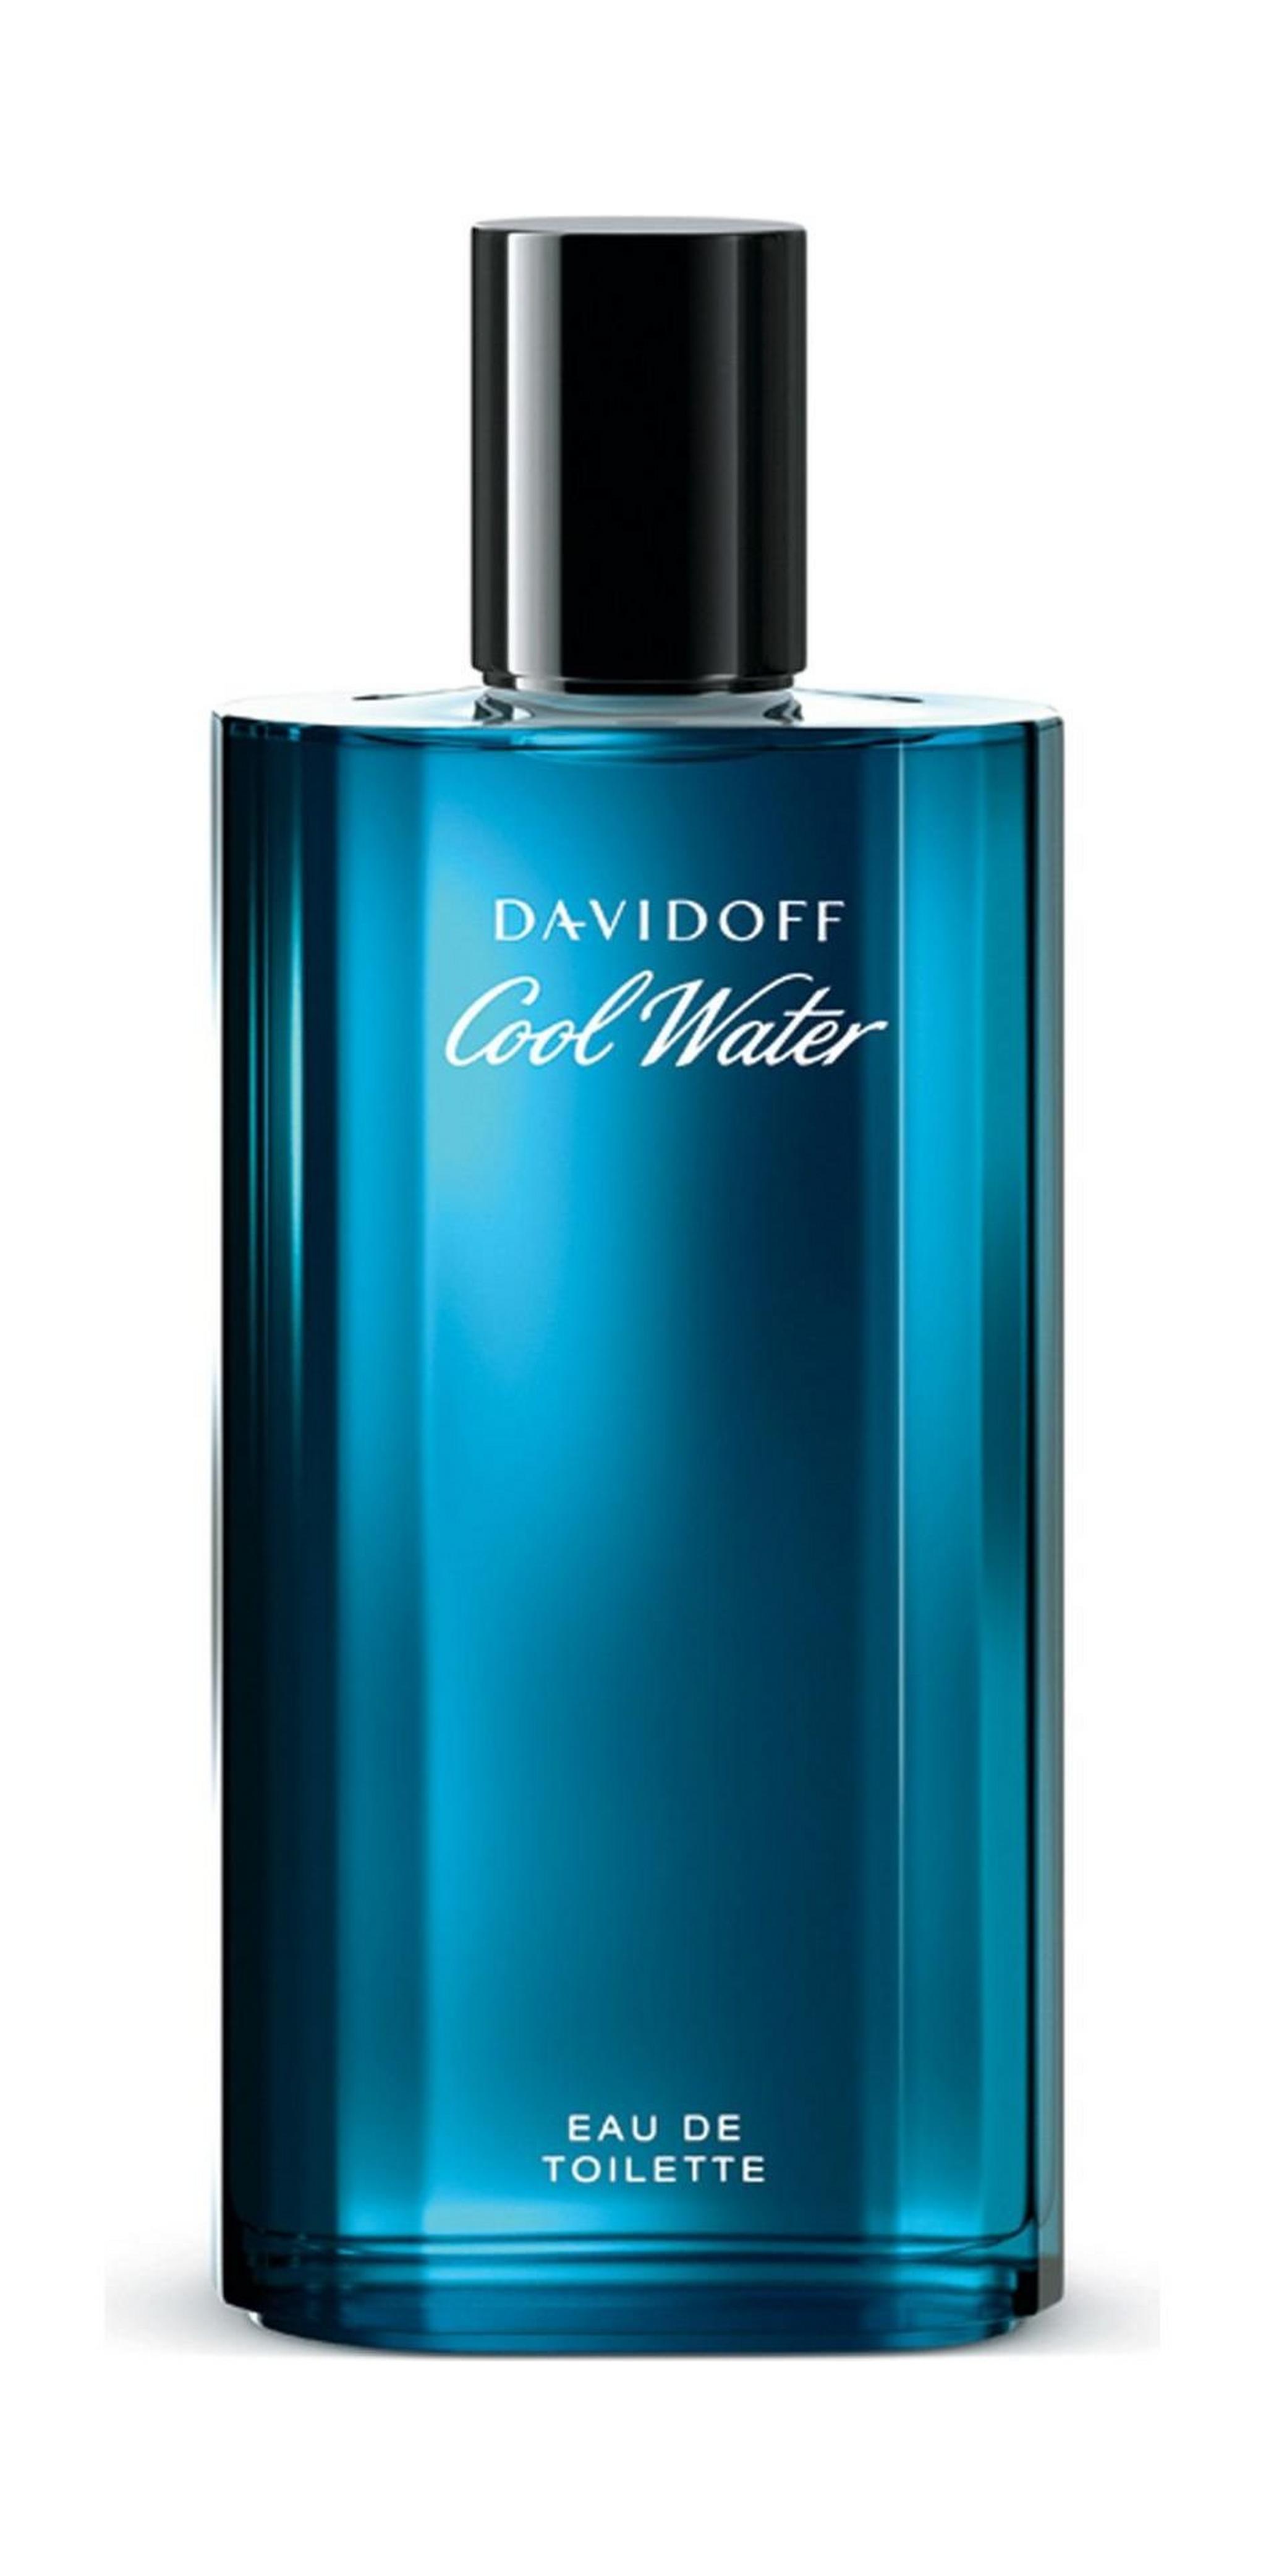 DAVIDOFF Cool Water - Eau de Toilette 125 ml